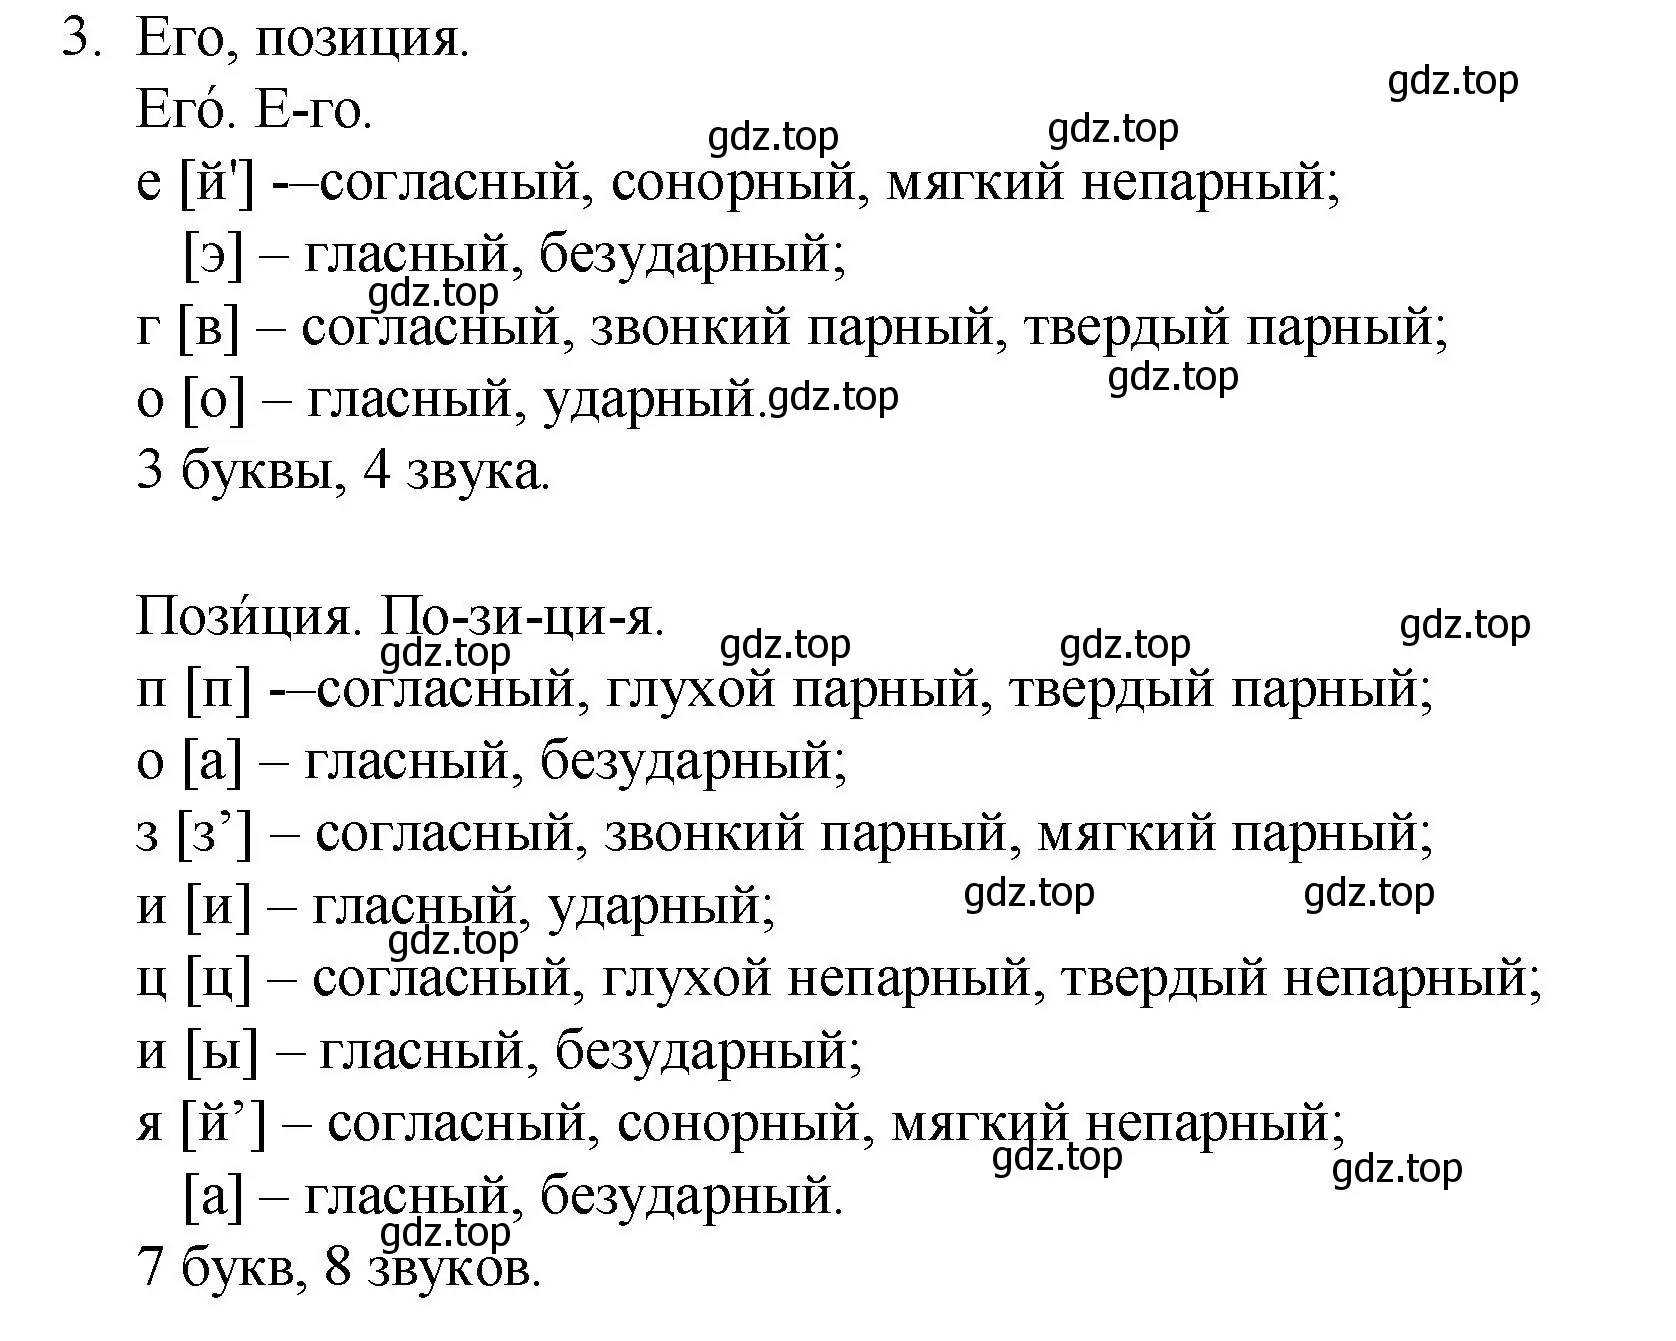 Решение номер 3 (страница 345) гдз по русскому языку 10-11 класс Гольцова, Шамшин, учебник 2 часть